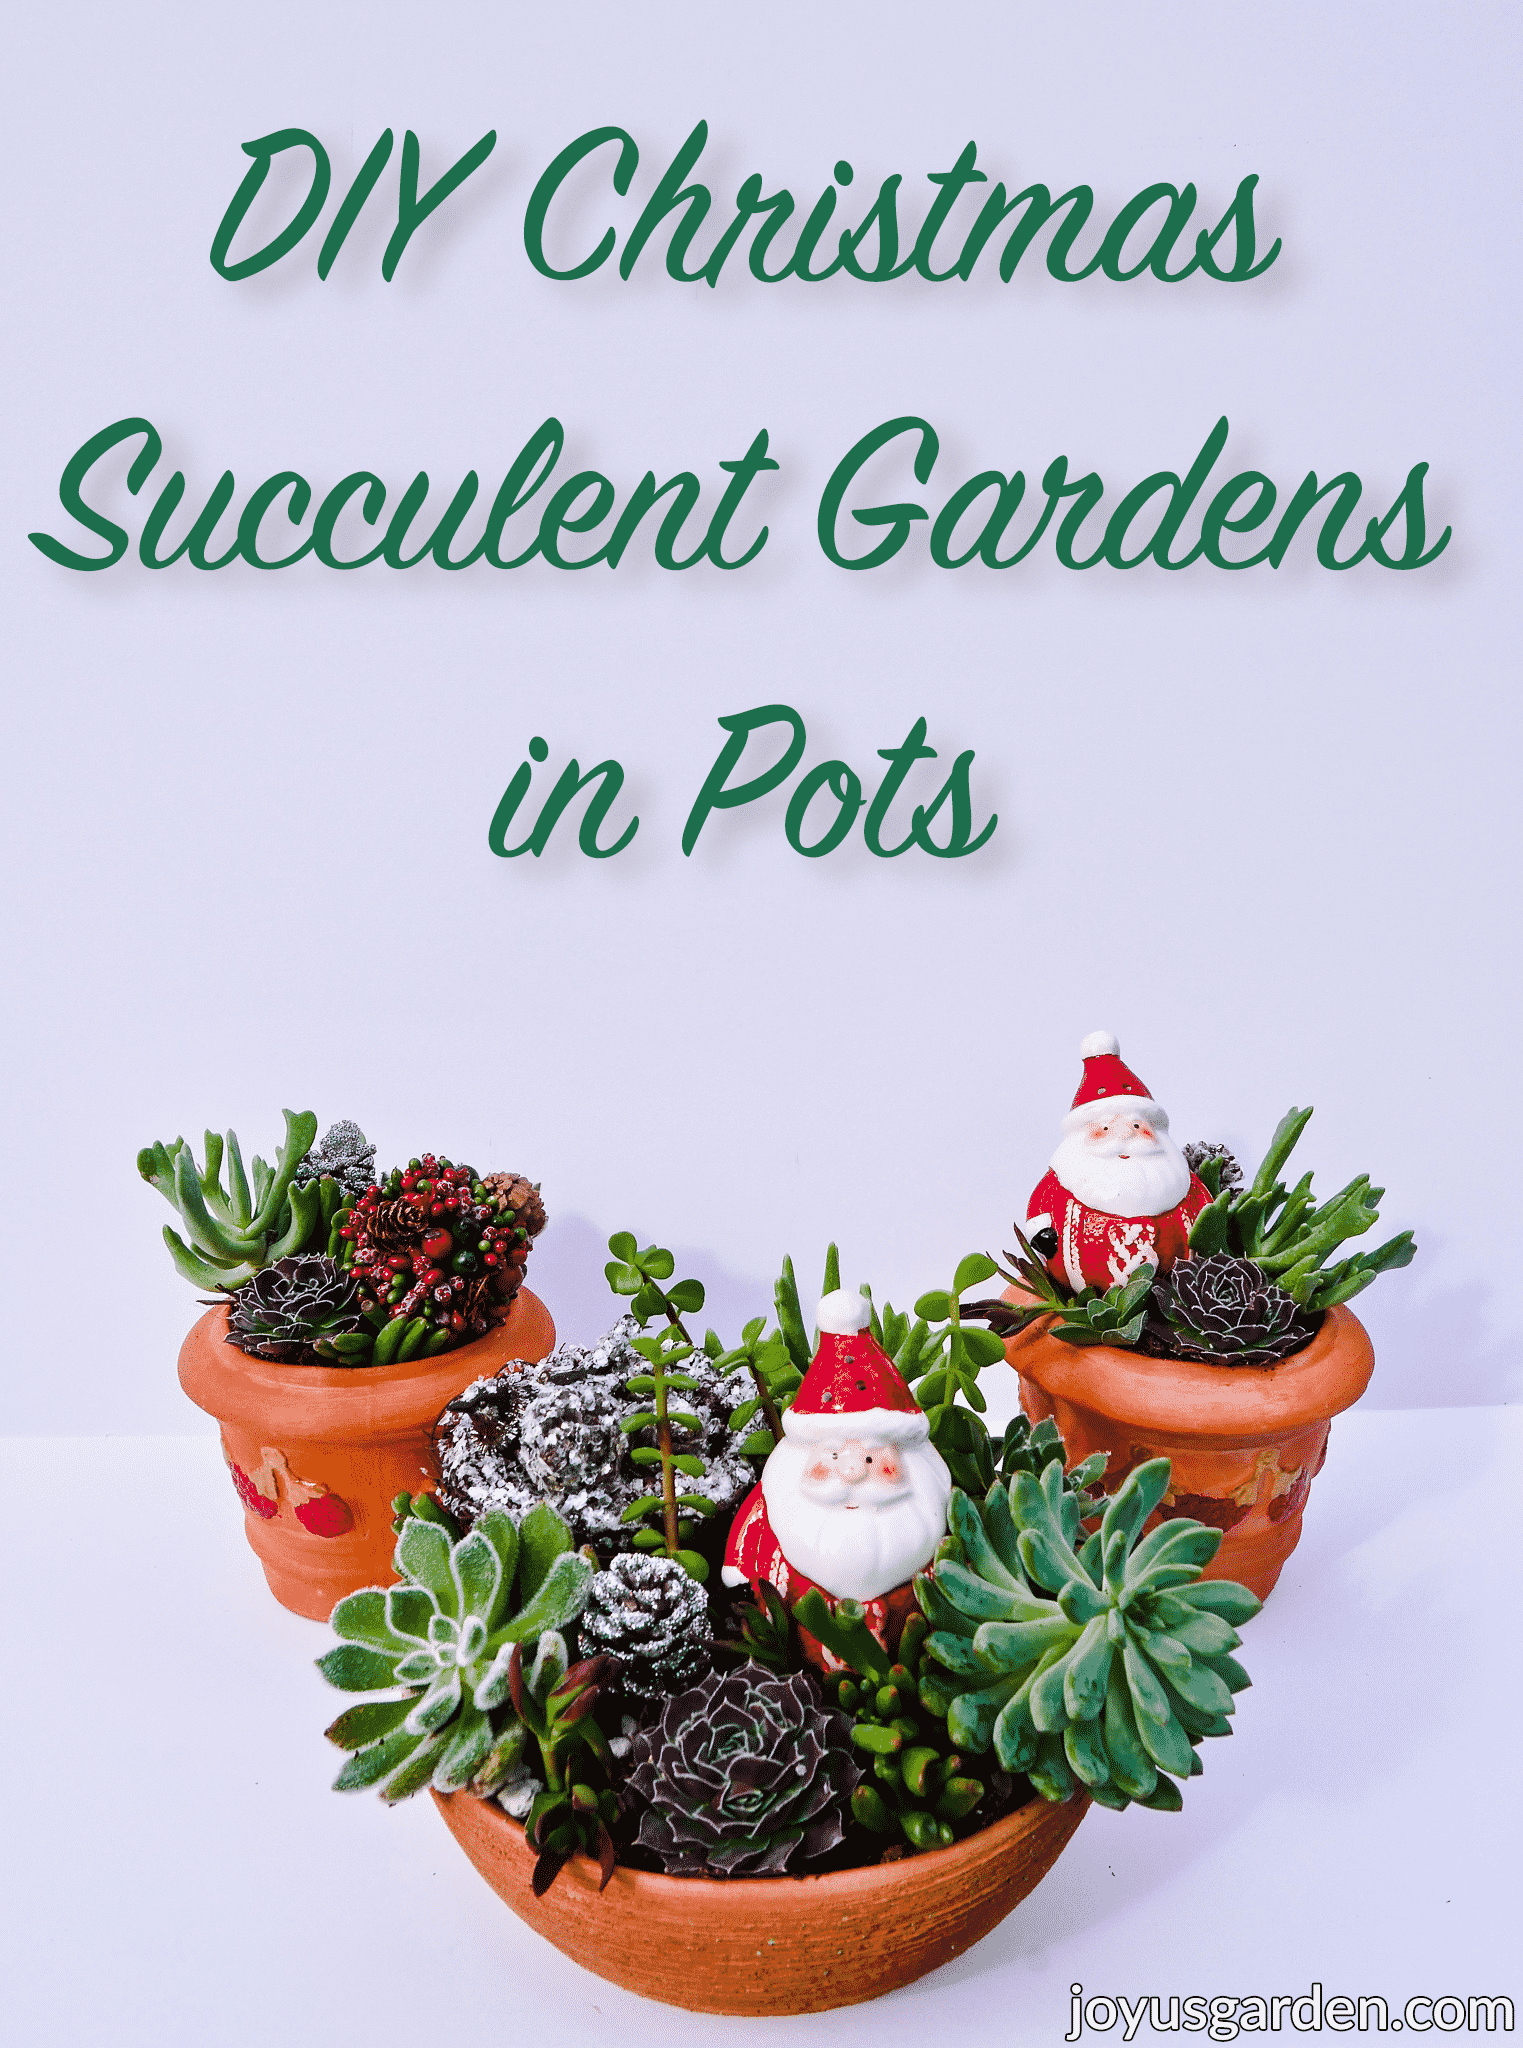  Χριστουγεννιάτικες συνθέσεις με παχύφυτα σε γλάστρες: ένα εορταστικό DIY κήπο με παχύφυτα